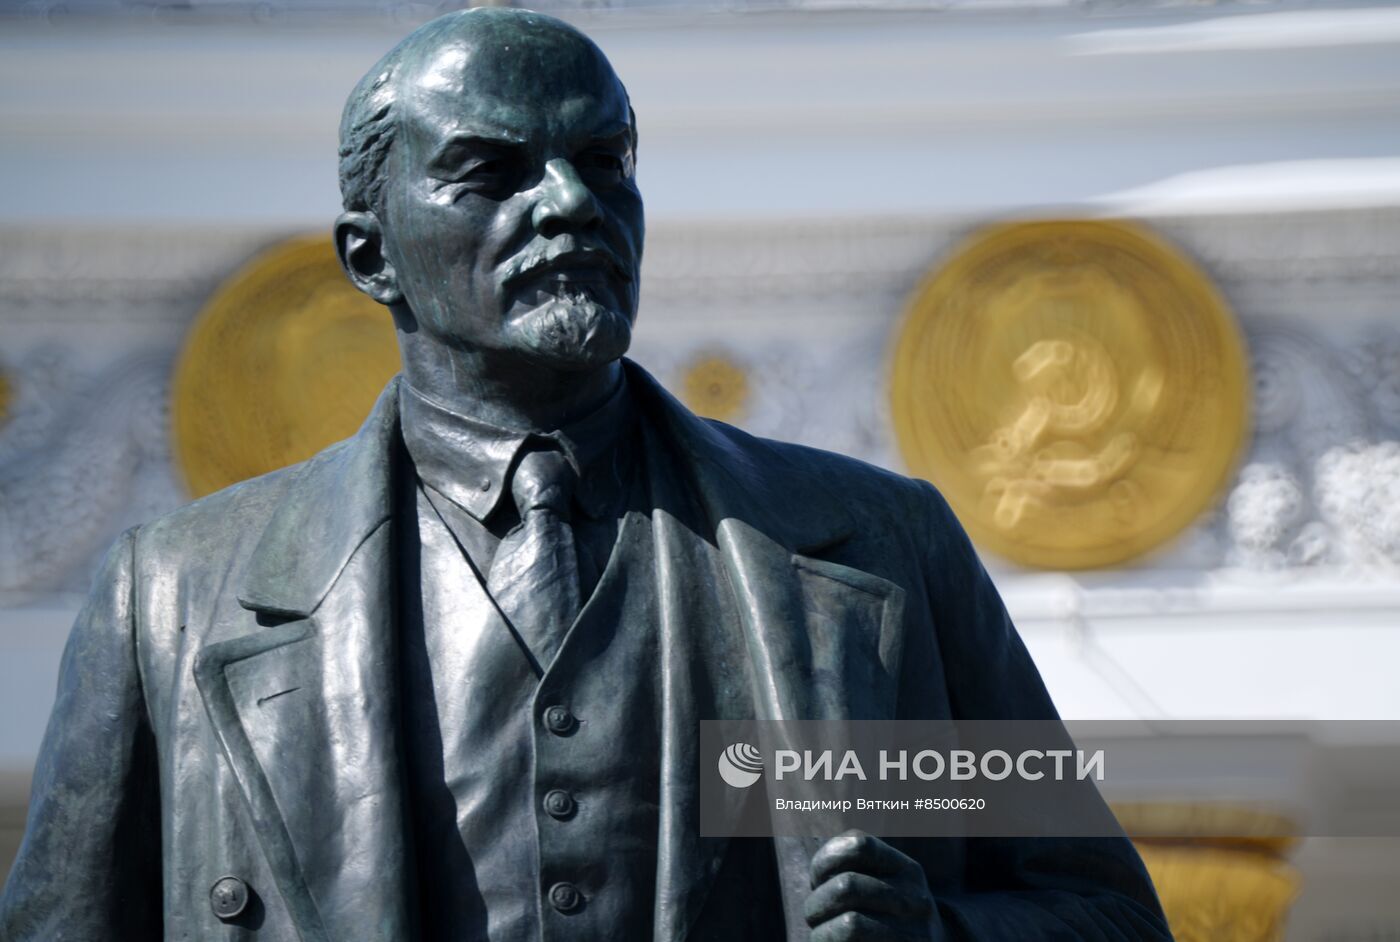 رئيس لجنة الشؤون المدنية في روسيا يقترح دفن جثة لينين